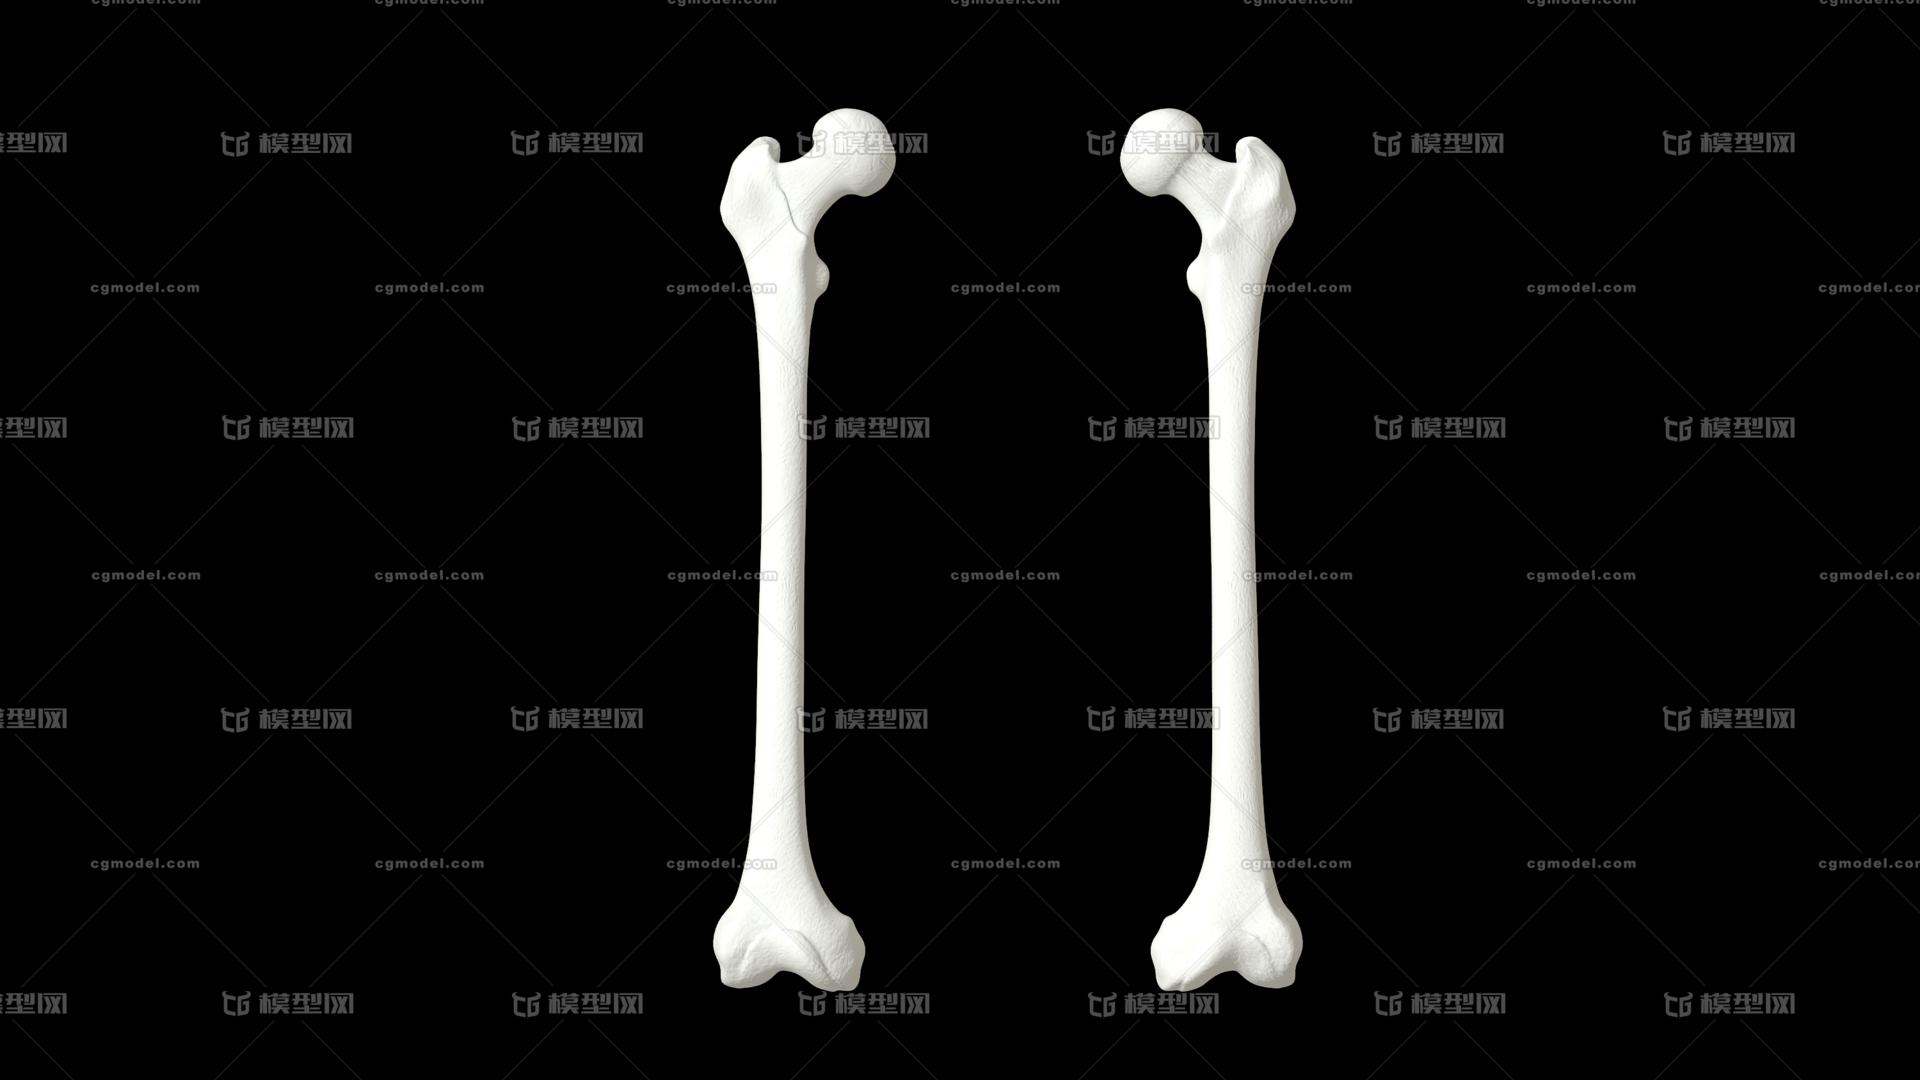 医学动画 高精度股骨 人体骨骼 骨架 医学模型 运动系统 人体解剖